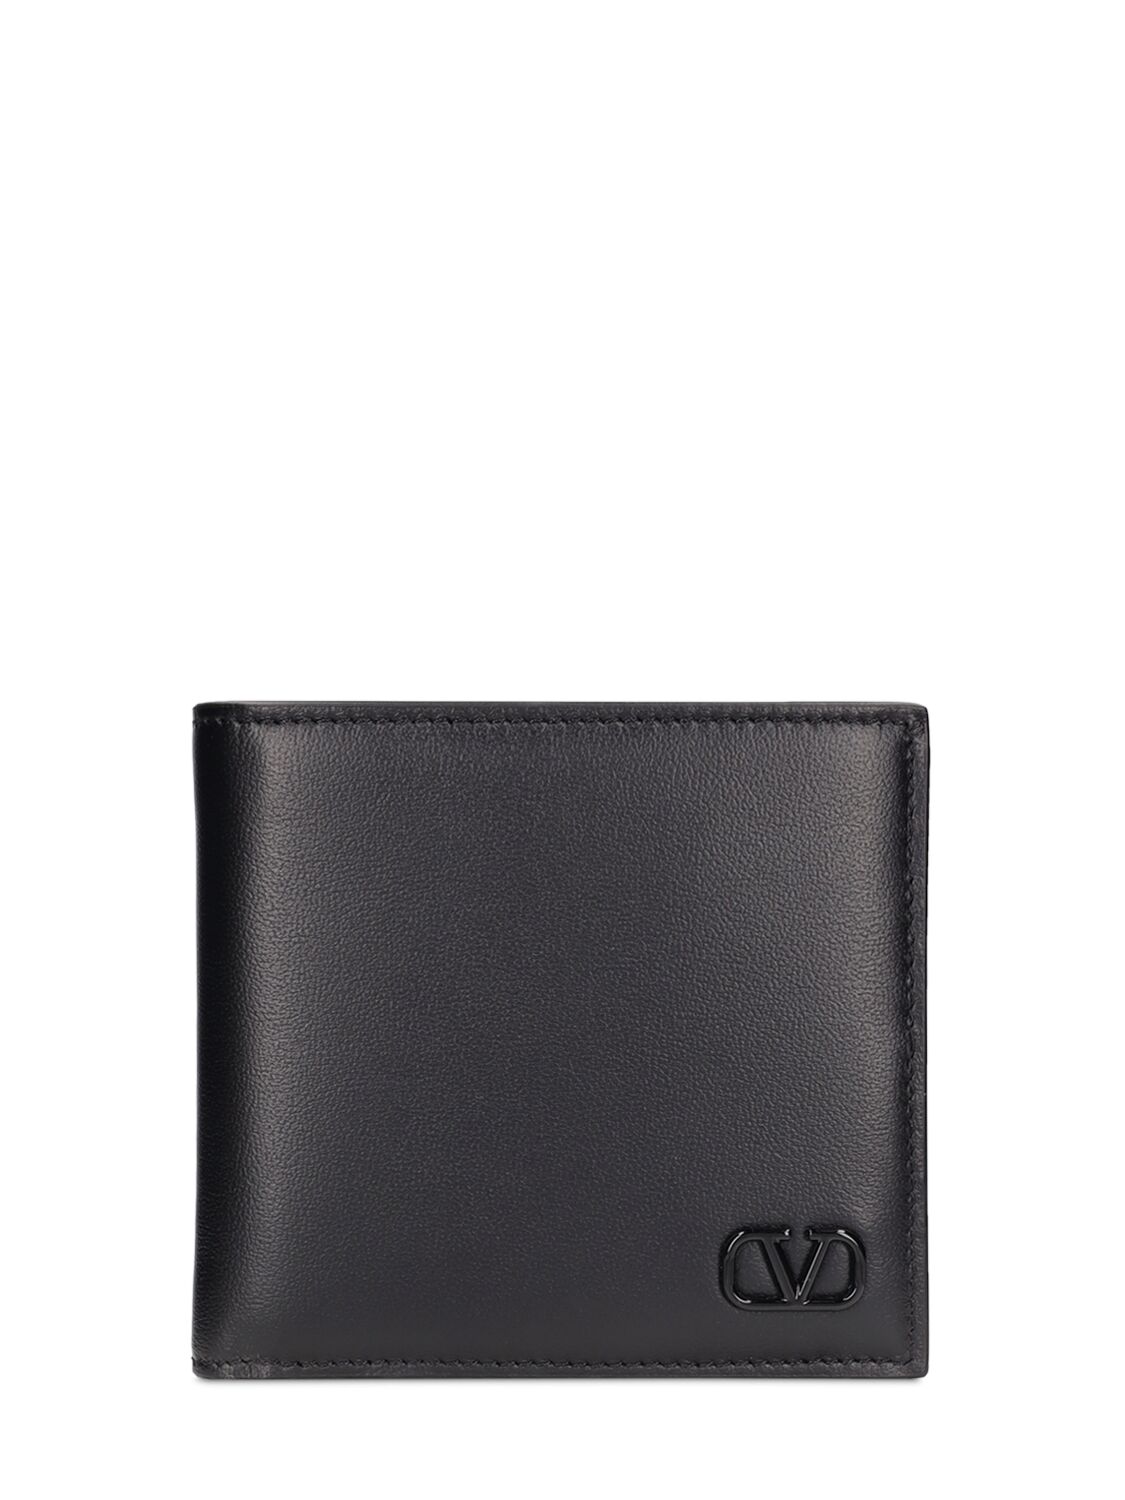 Valentino Garavani V Logo Billfold Leather Wallet In Black